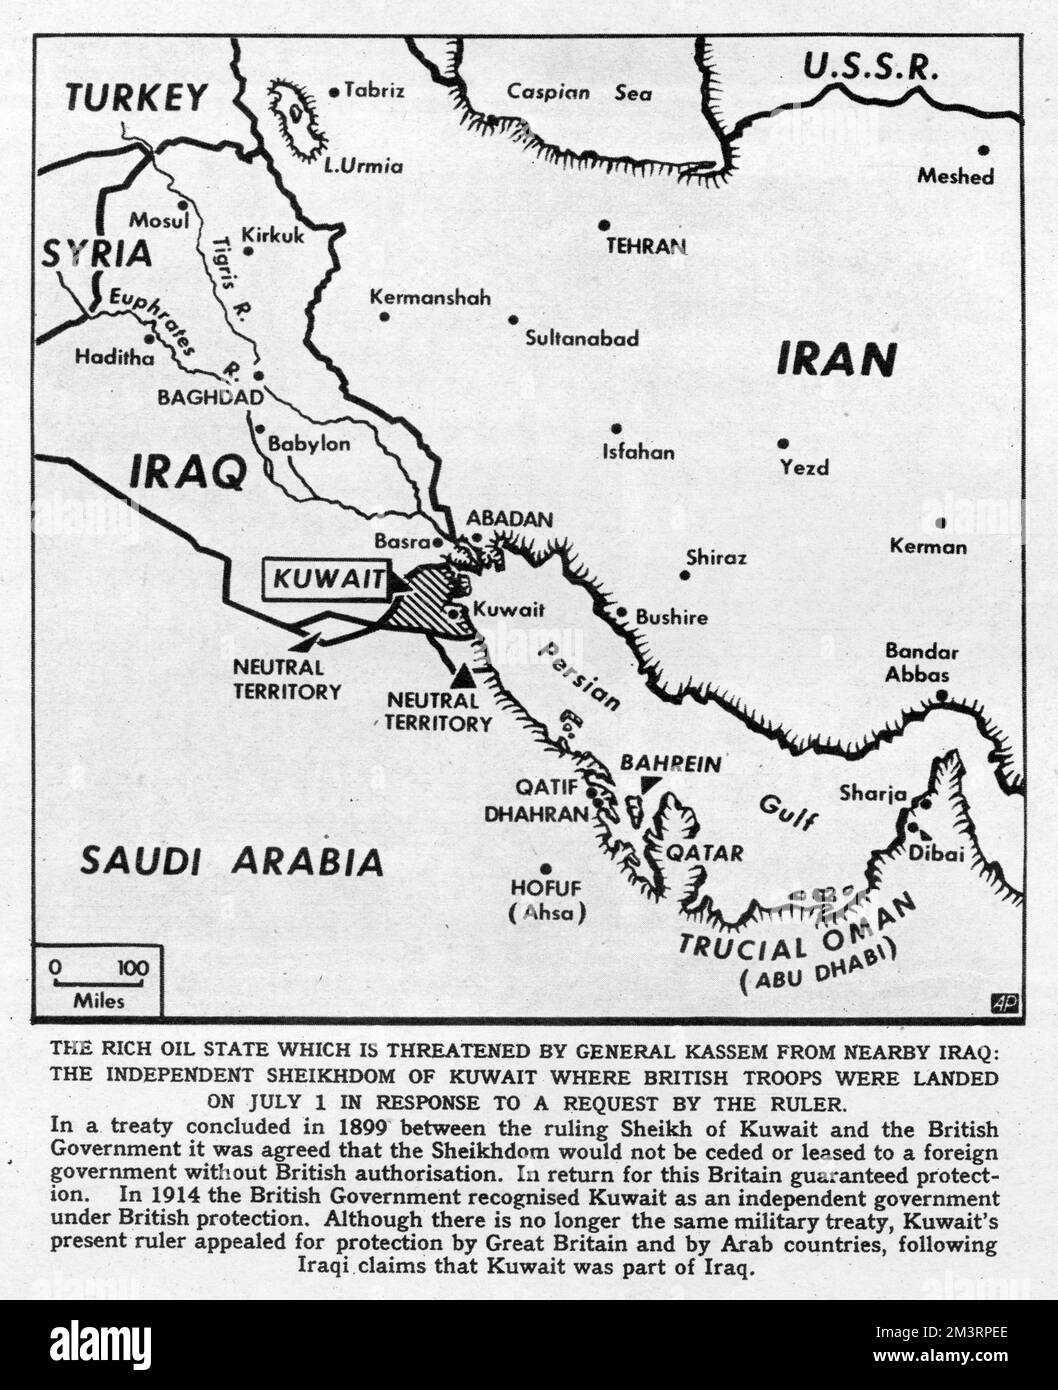 Page de The Illustrated London News avec la fonction hebdomadaire notre carnet écrit par Arthur Bryant commentant la situation au Koweït en 1961. Le général Kassem de l'Iraq a revendiqué que le Koweït, riche en pétrole, était un territoire iraquien et a mobilisé des militaires près de sa frontière. Cette décision a incité la Grande-Bretagne à envoyer des troupes de soutien. L'article est illustré par une carte du Moyen-Orient montrant le Koweït bordé par l'Iraq et l'Arabie saoudite. Banque D'Images